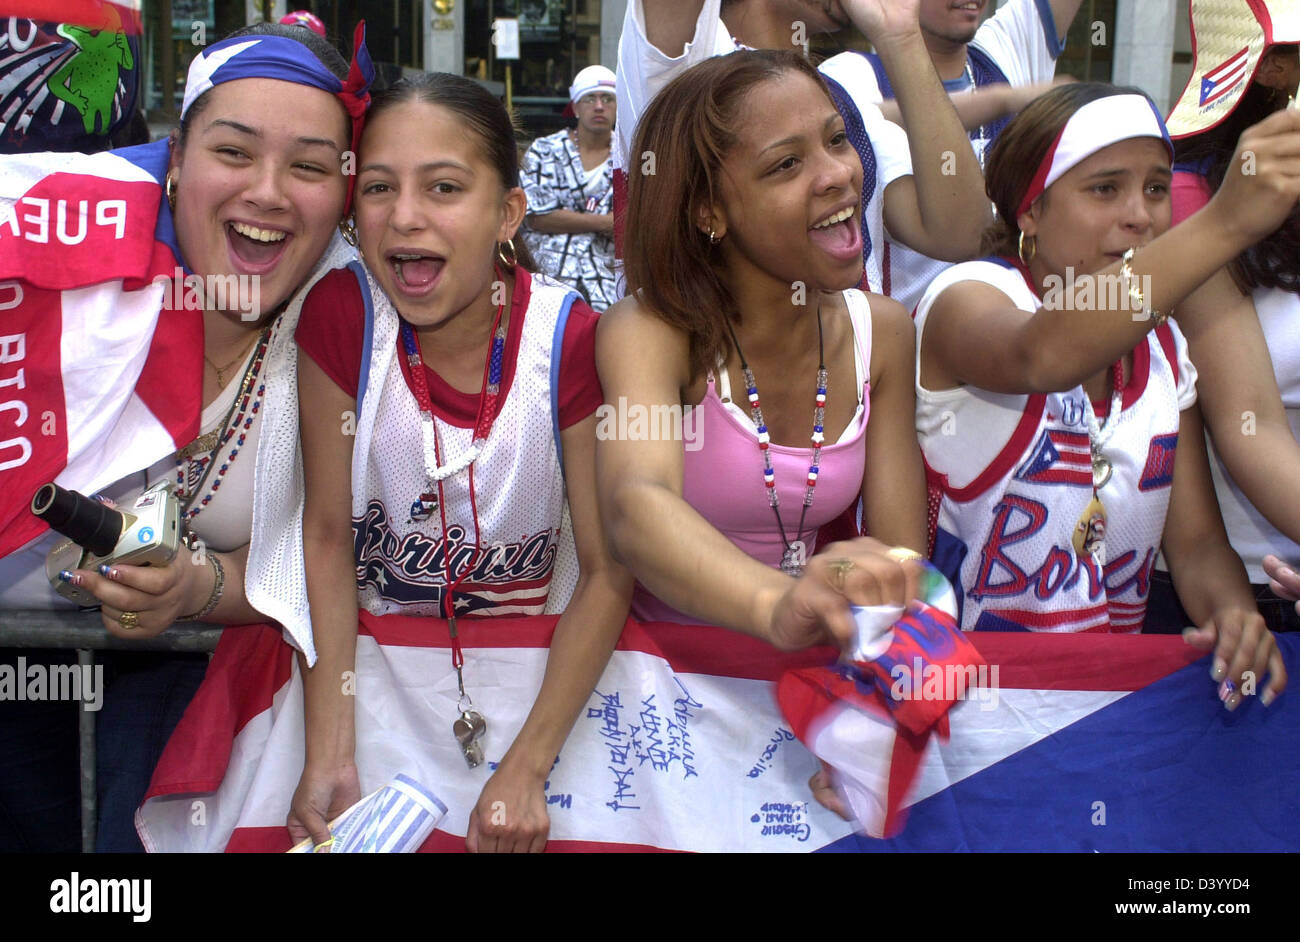 Spettatori ondata di bandiere e di allegria presso il quarantacinquesimo annuale di Puerto Rican Day Parade il 9 giugno 2002 a New York. Foto Stock